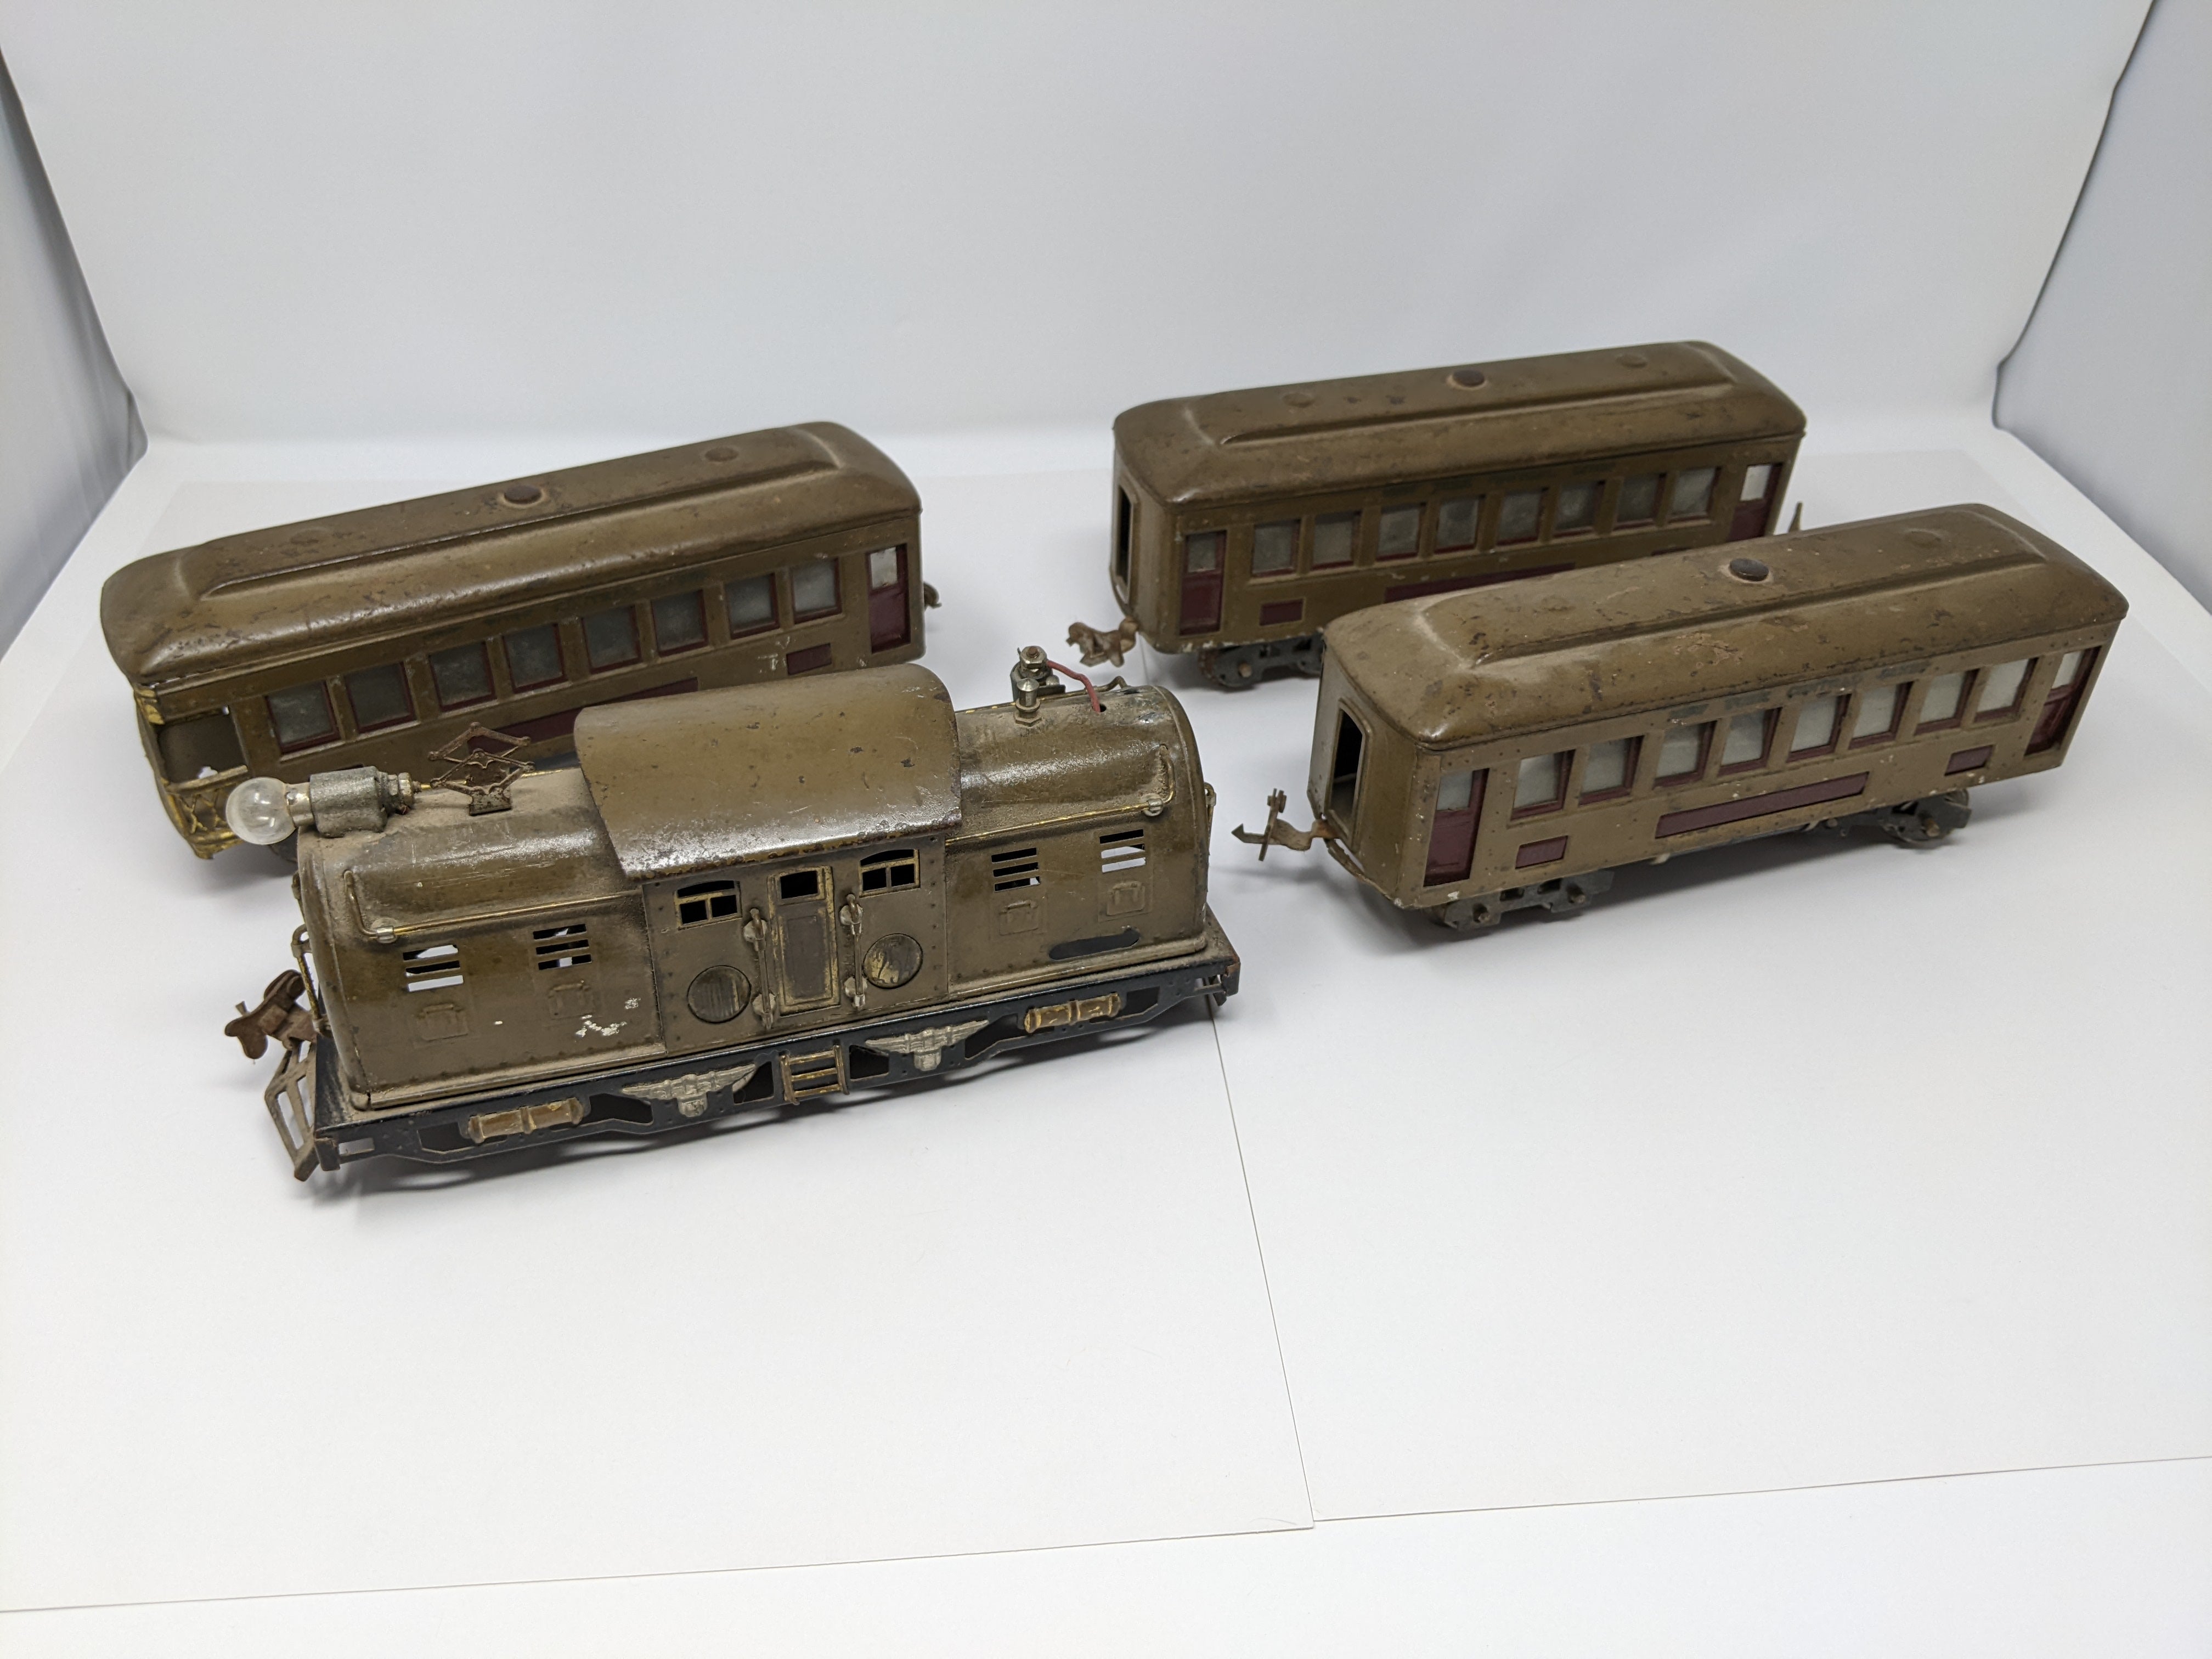 USED Lionel O, Vintage Pre-War Locomotive 254 & 3 Passenger Cars, New York Central